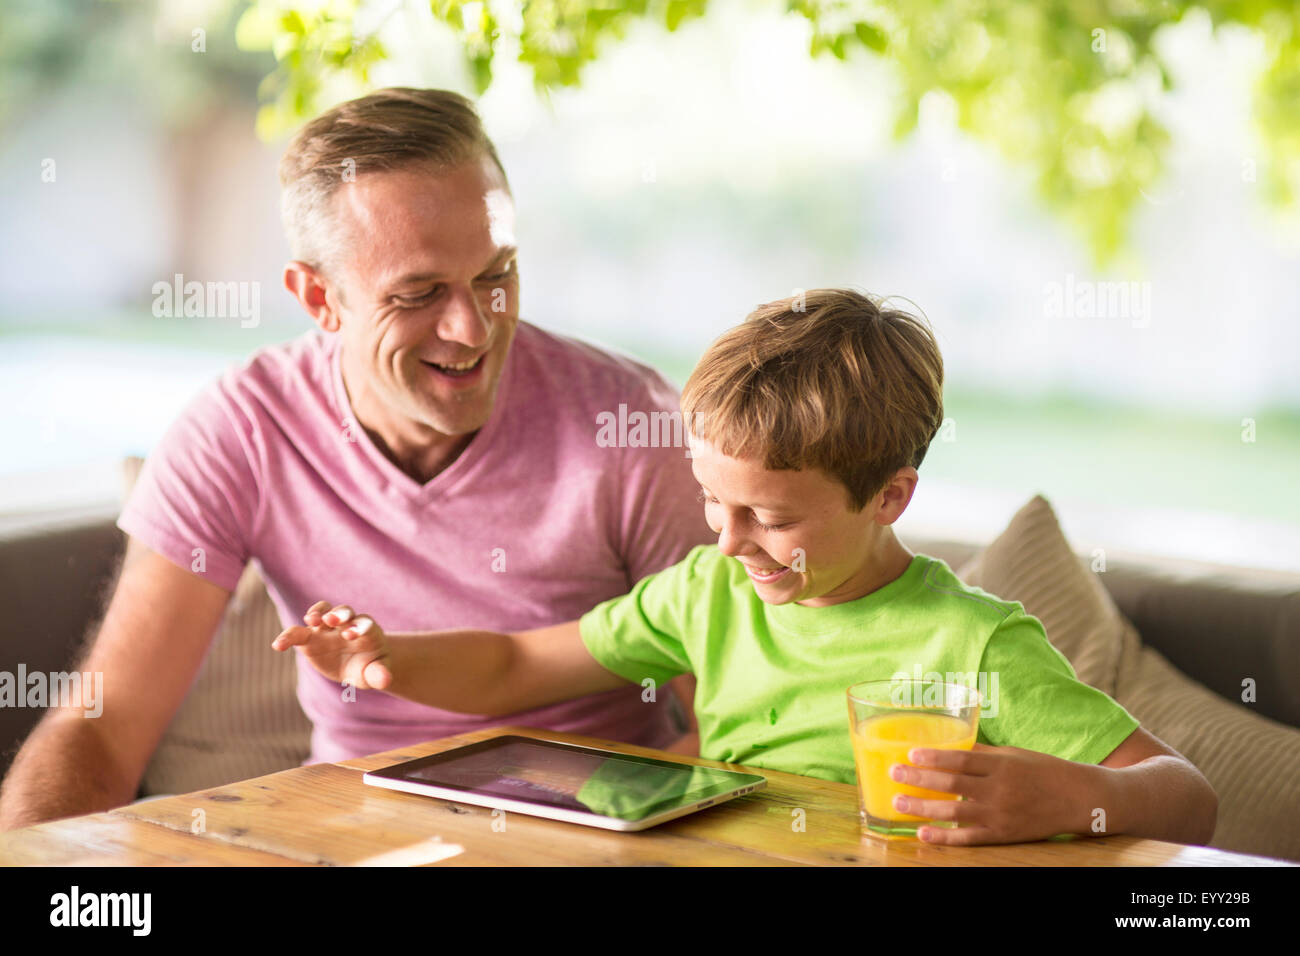 Portrait père et fils using digital tablet outdoors Banque D'Images